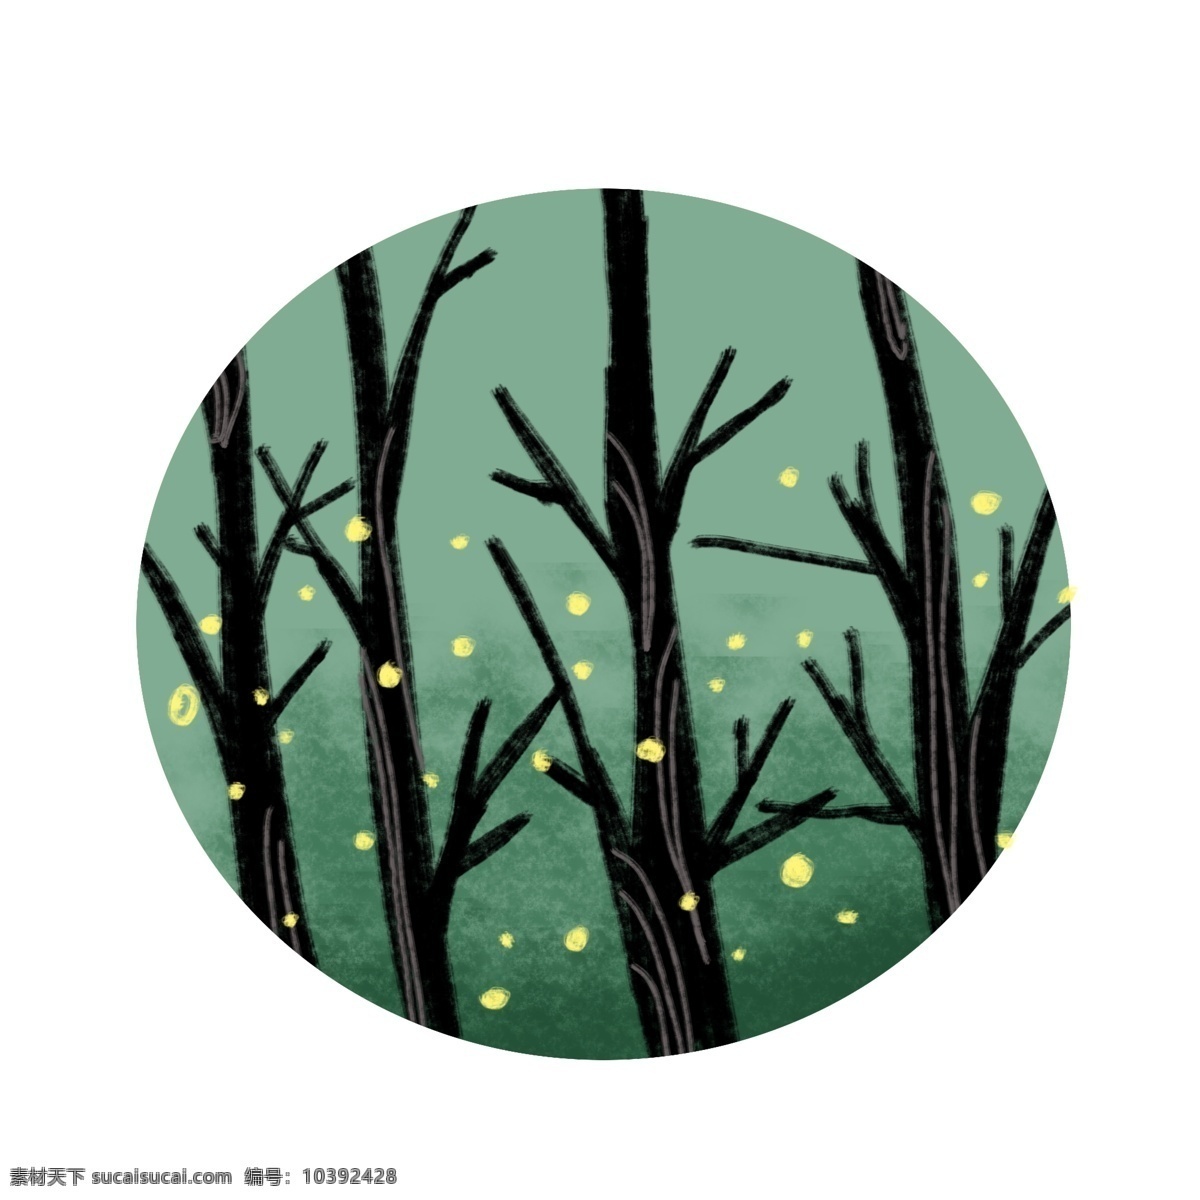 树枝萤火虫 萤火虫 卡通 可爱 凉爽 简洁 手绘 树枝